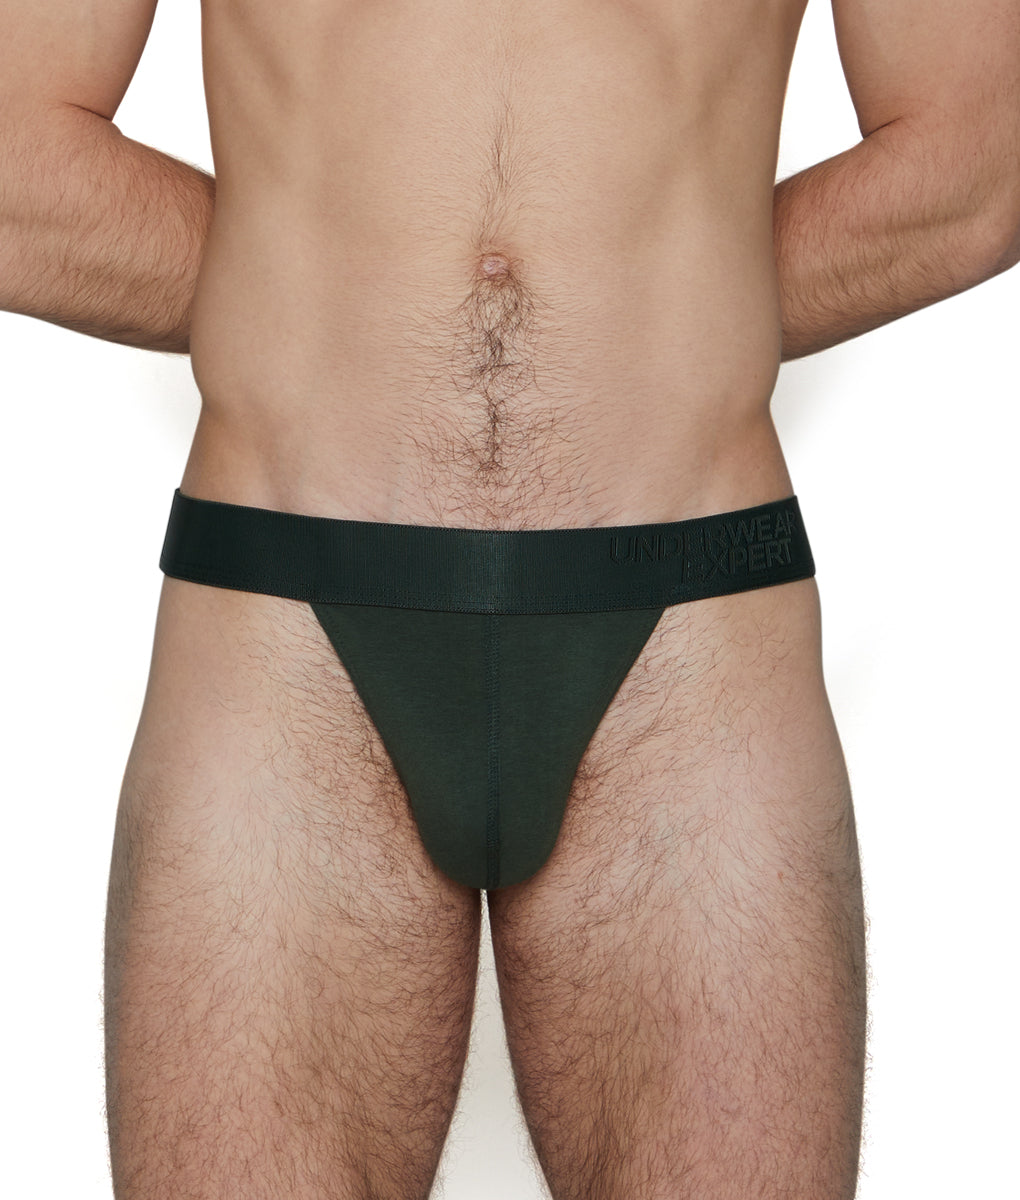 https://www.underwearexpert.com/cdn/shop/products/UnderwearExpert-Thong-02100-03-kent-green-f.jpg?v=1661546702